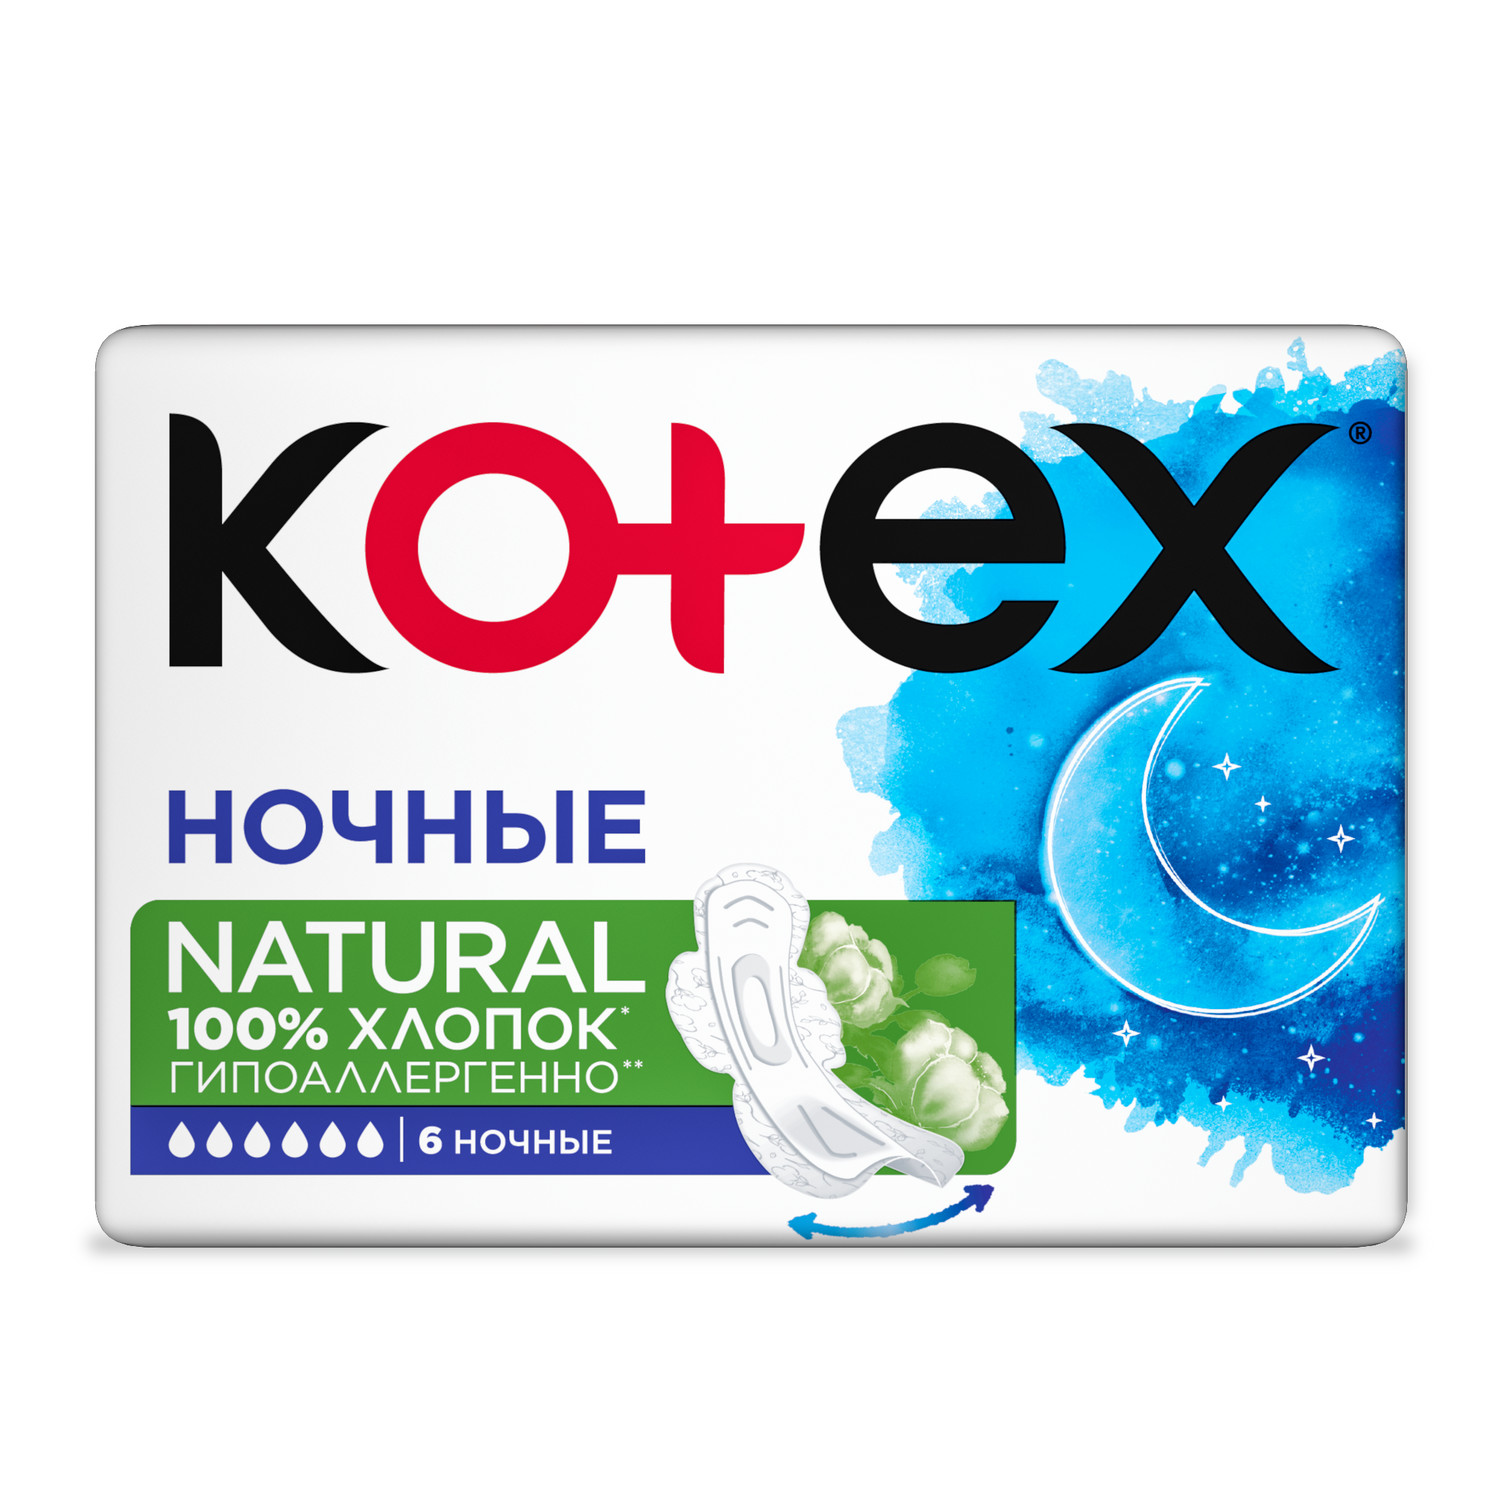 Прокладки KOTEX Natural ночные 6шт - фото 3